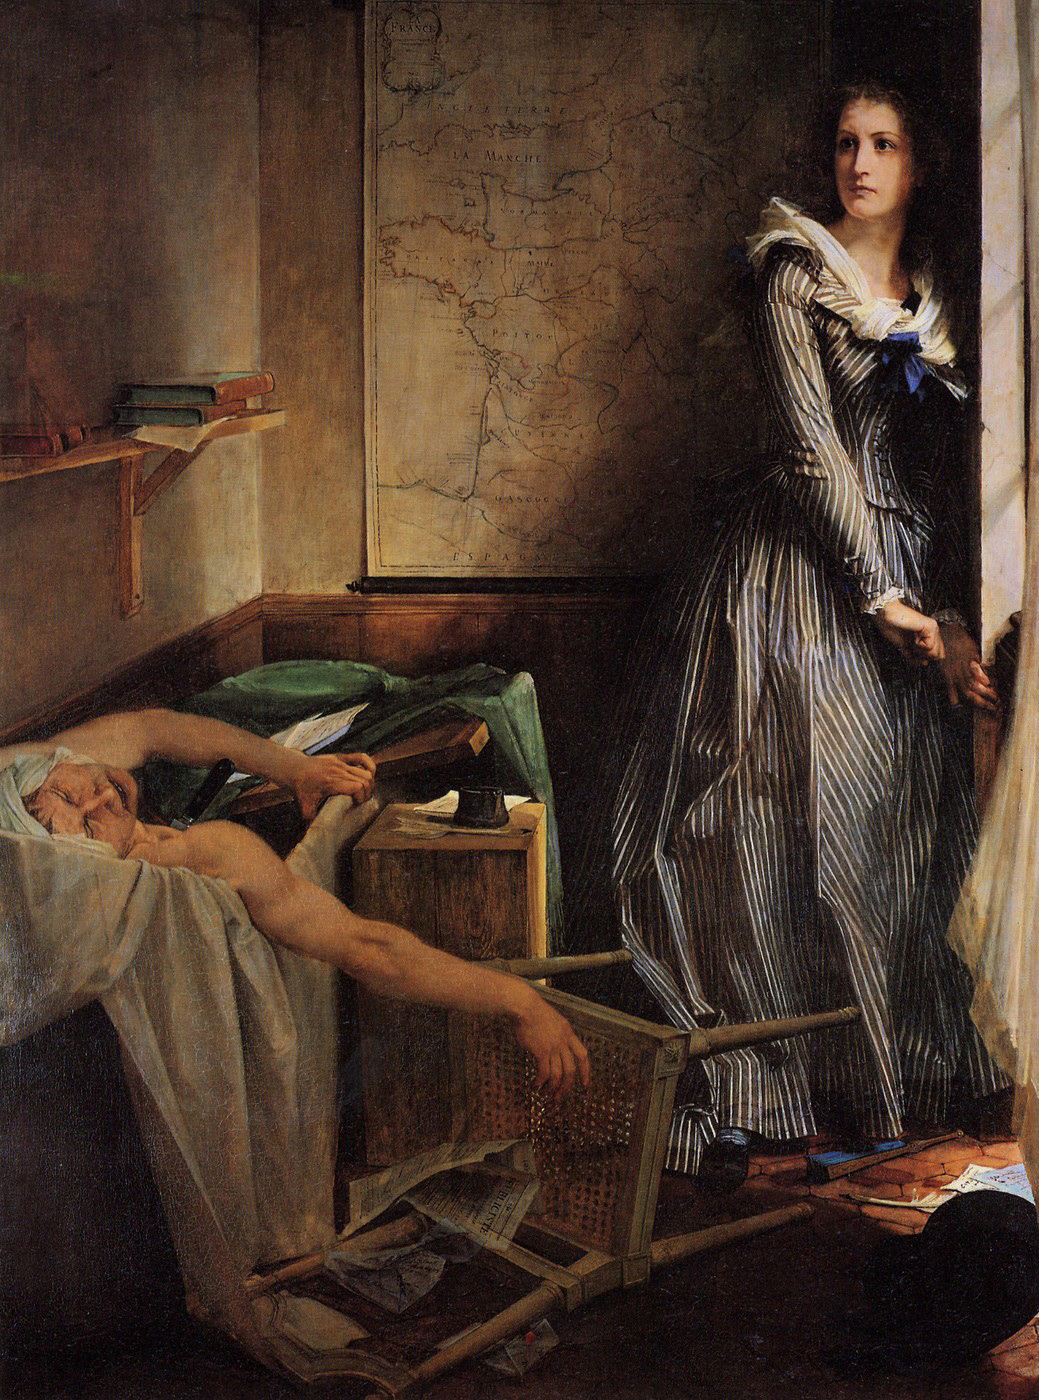 夏洛特·科黛 by 保罗 鲍德里 - 1860 - 203 × 154 cm 